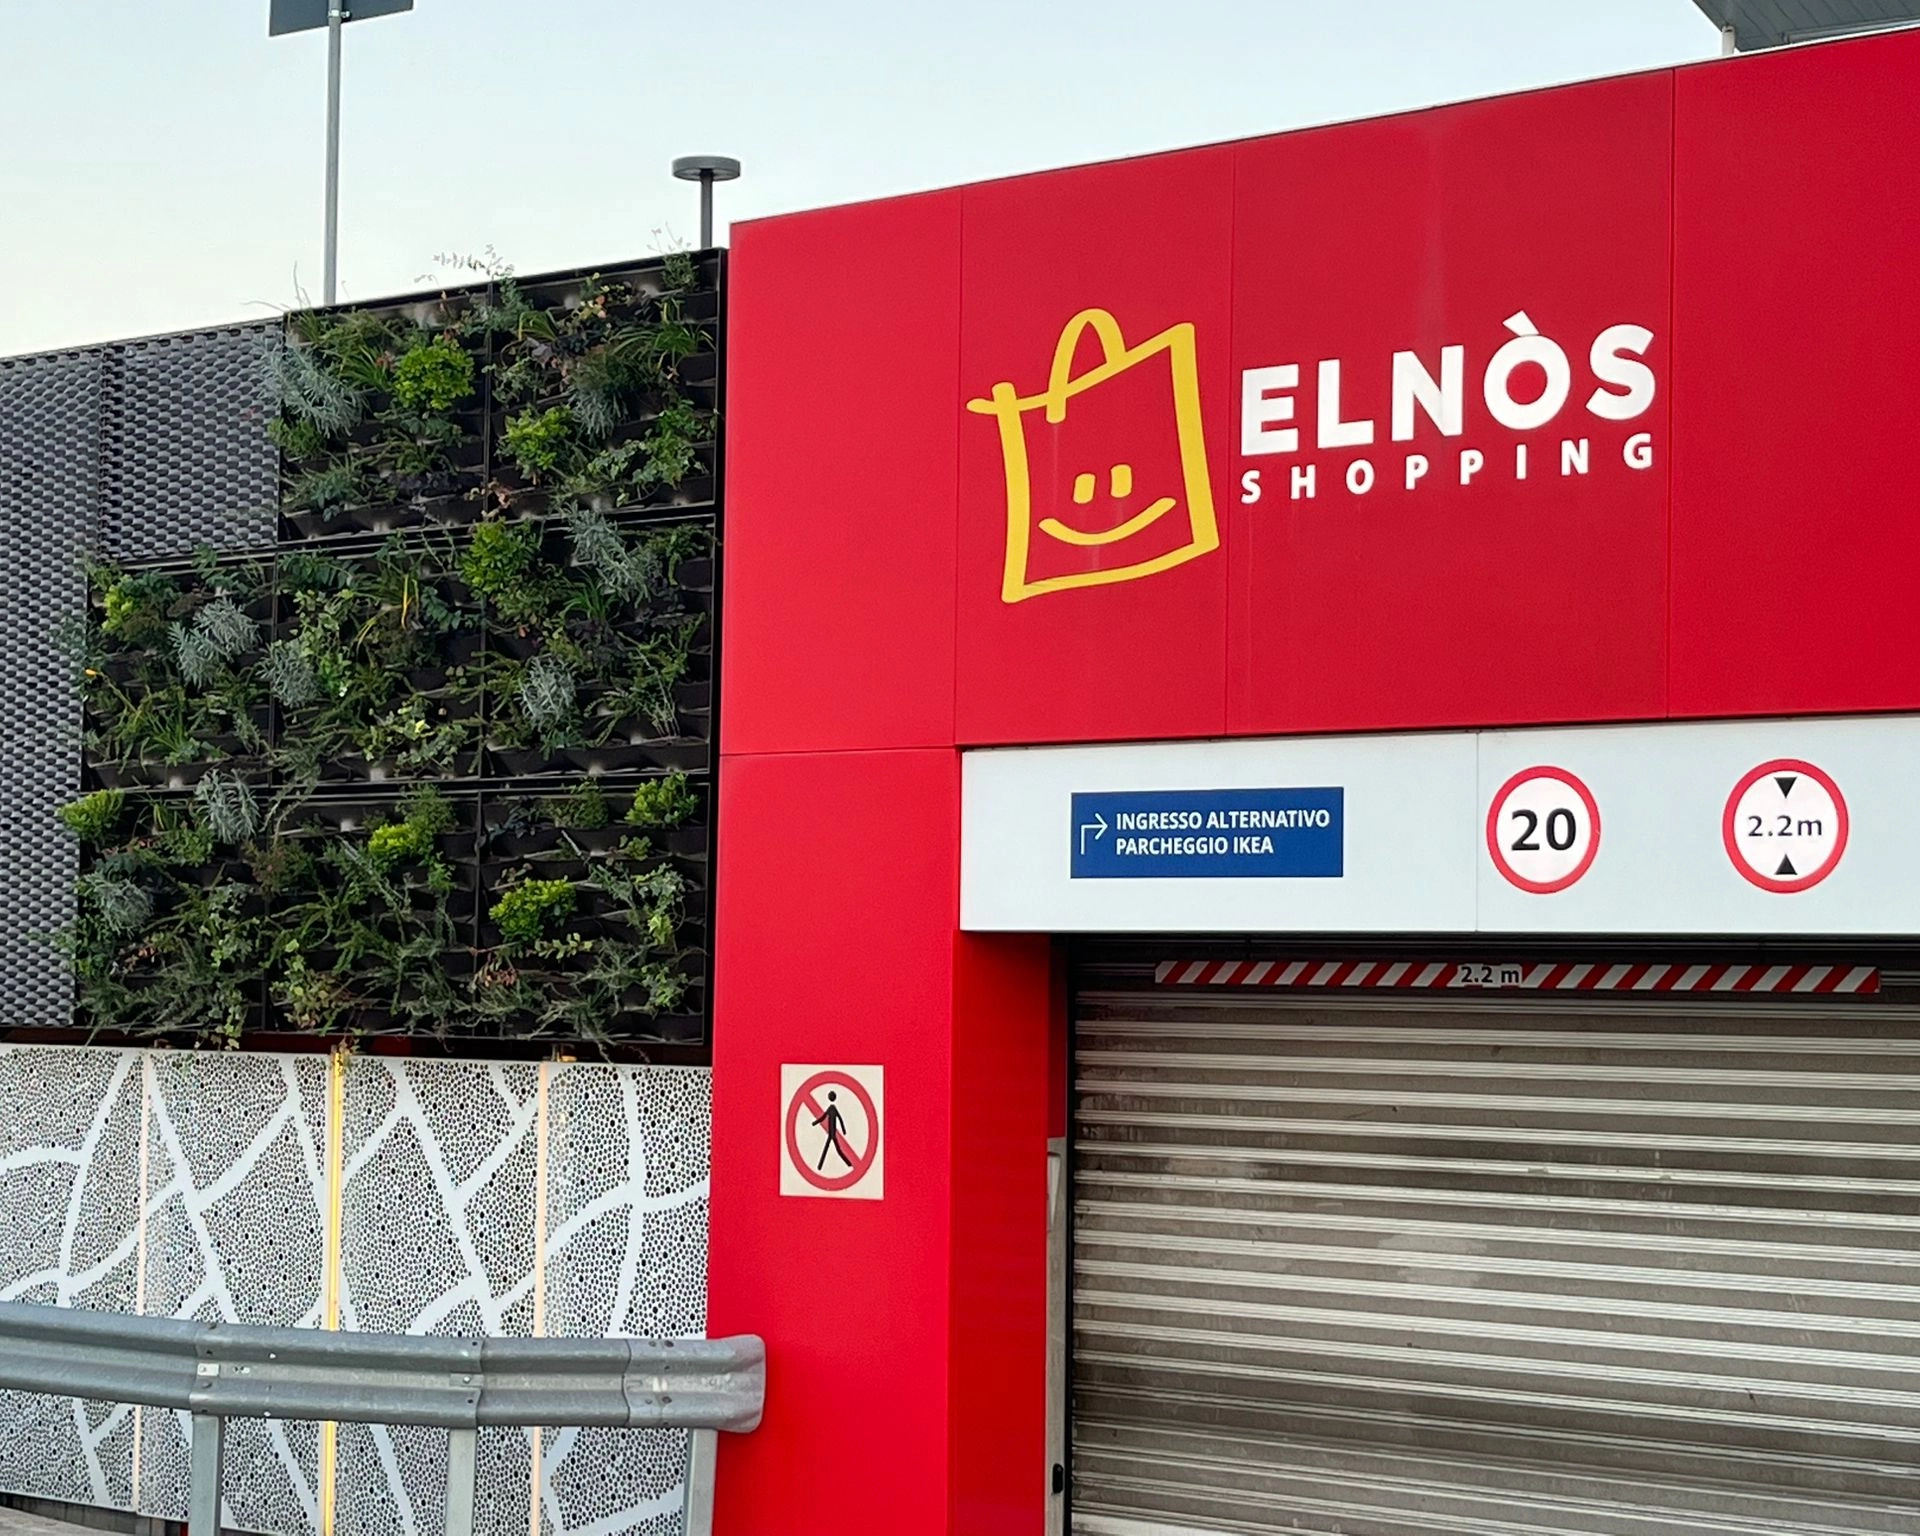 Giardini aziendali verticali come Elnos - Il Lauro